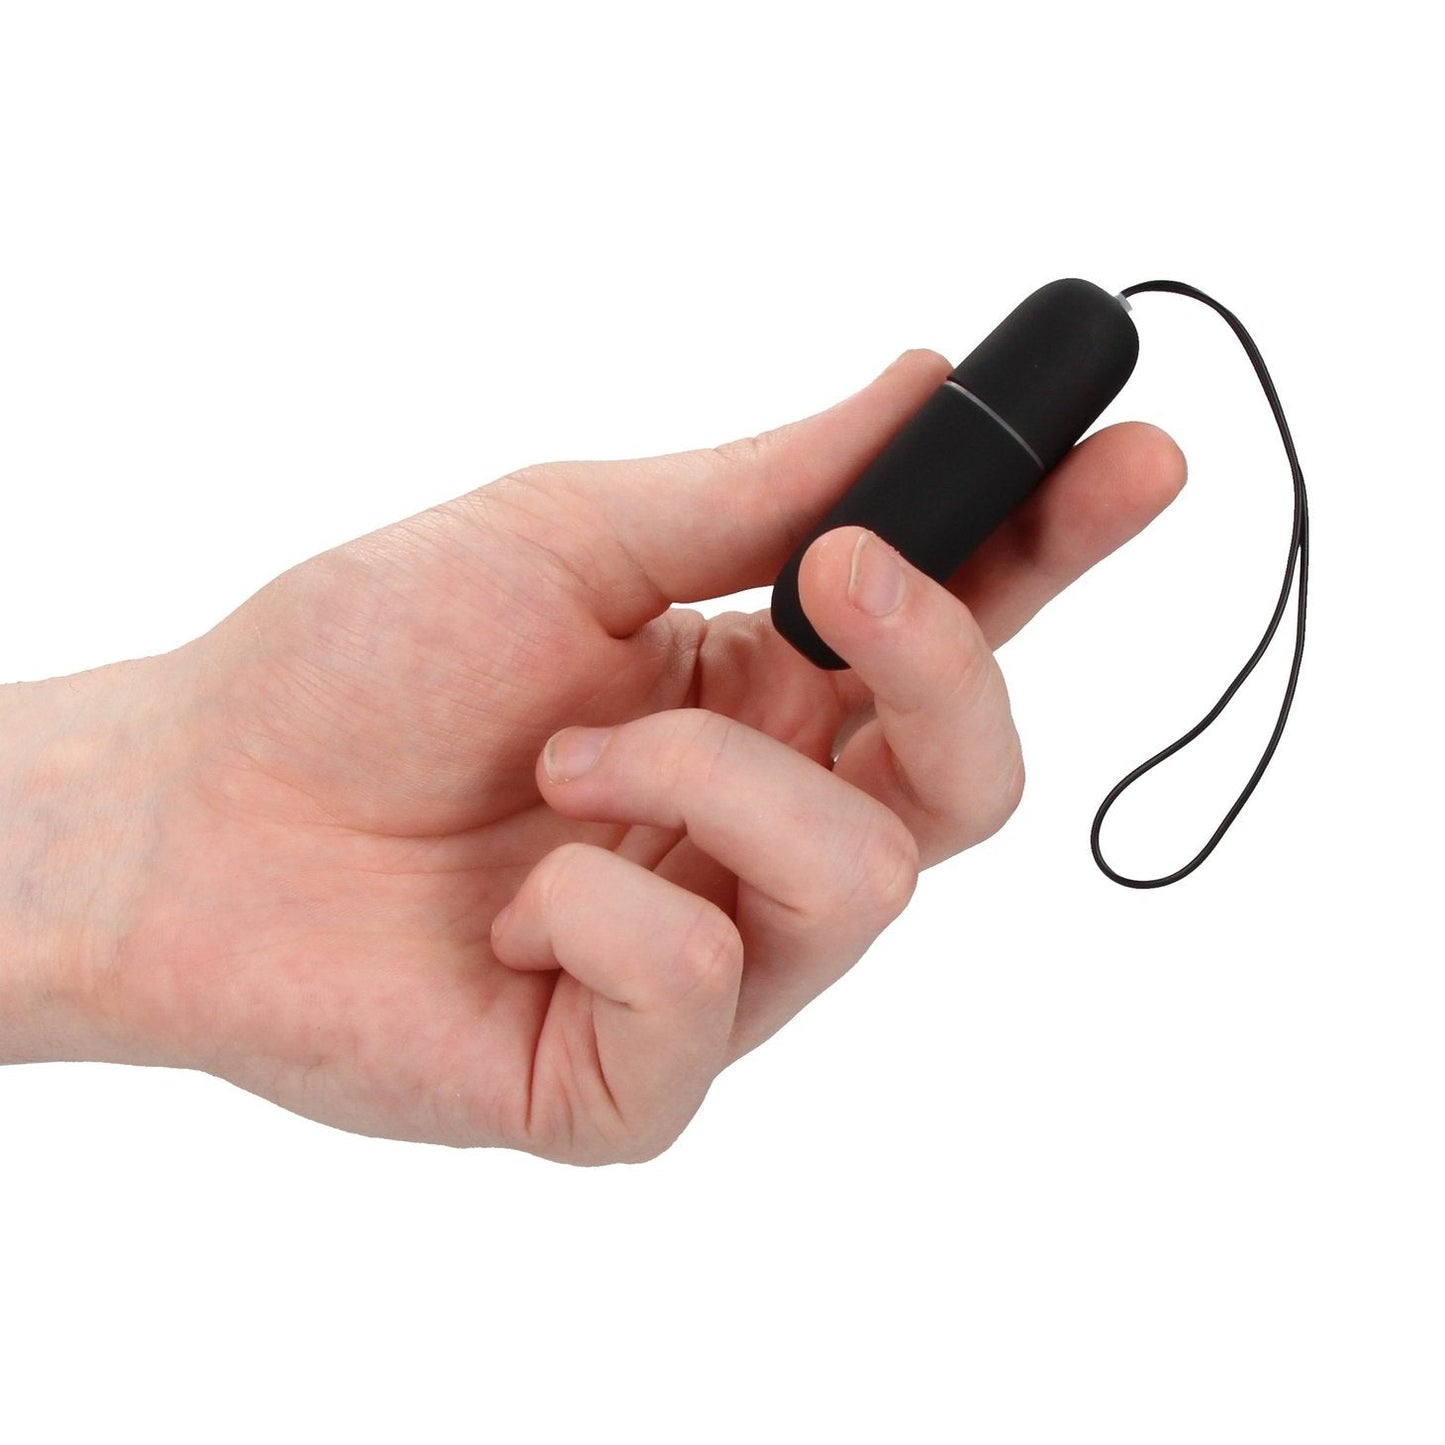 Vibrating Remote Bullet - Black Shots Toys